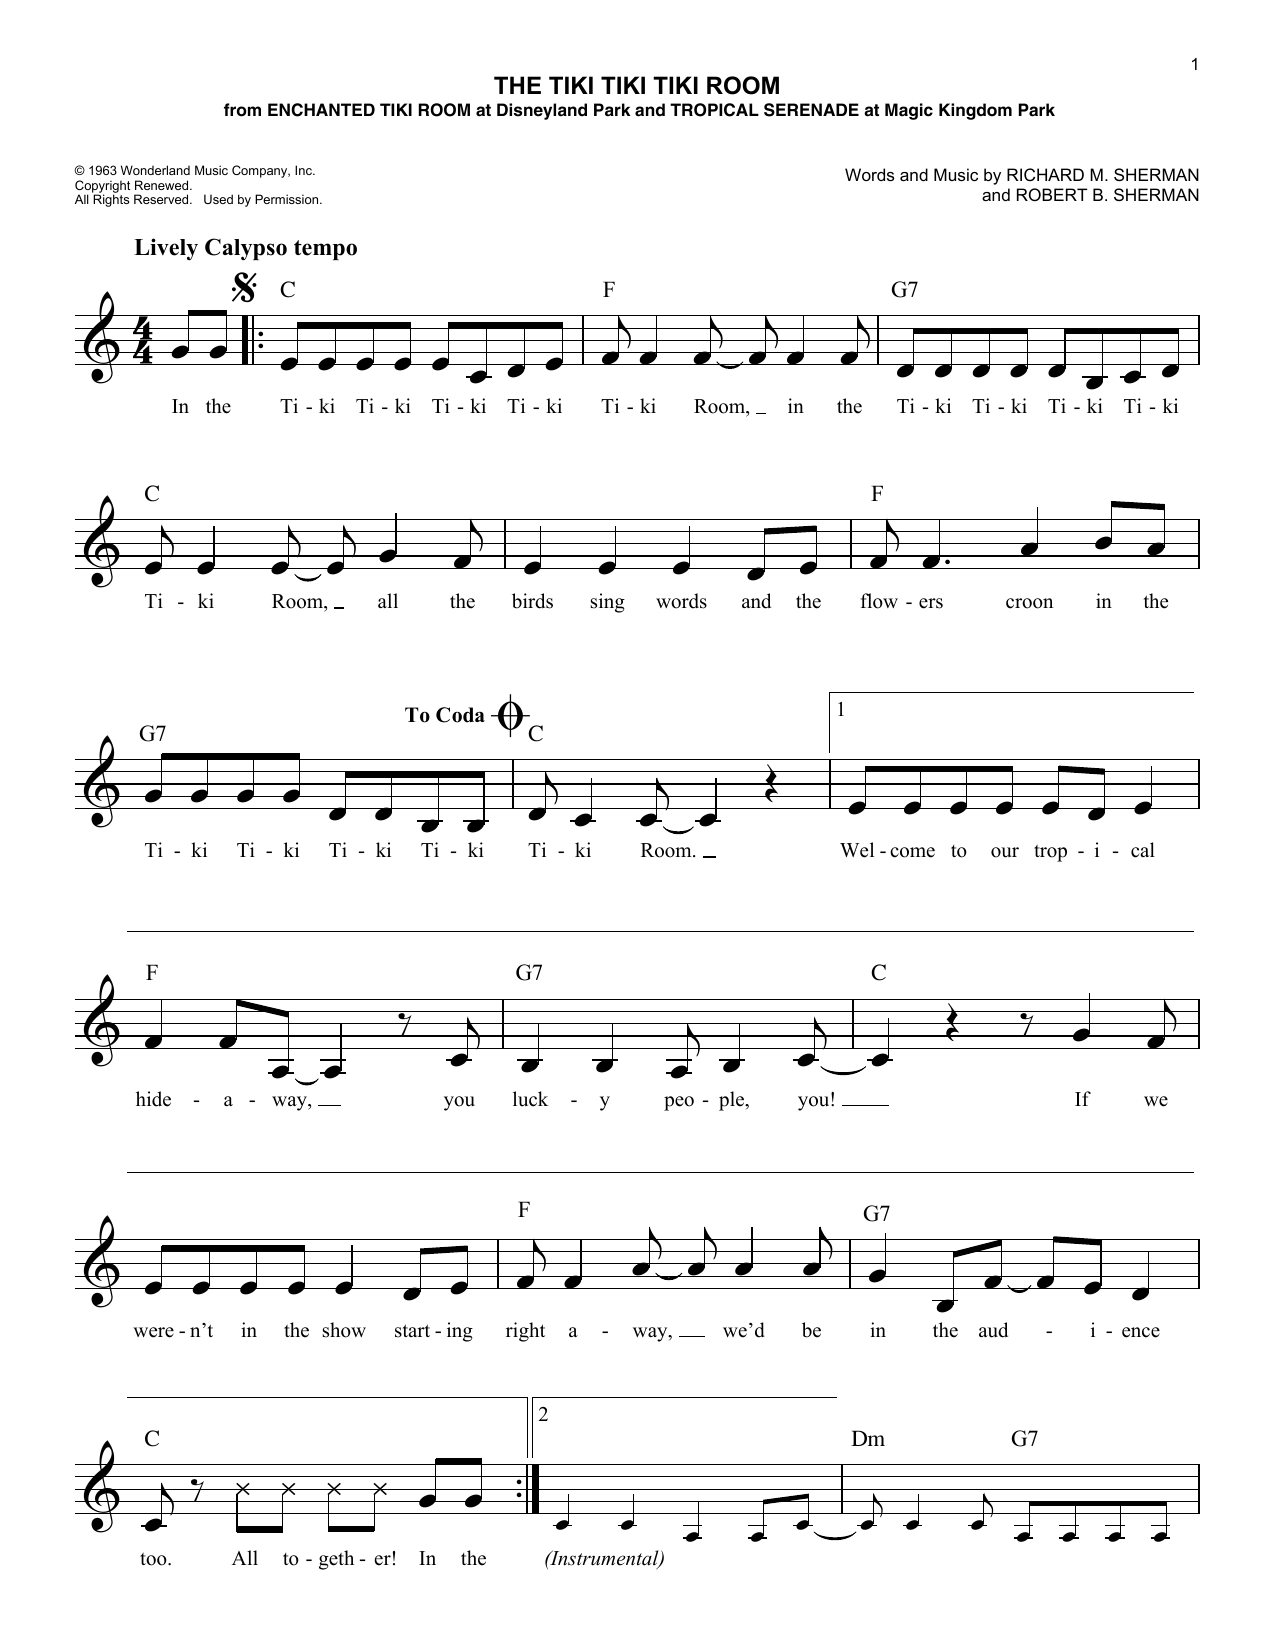 Richard M. Sherman The Tiki Tiki Tiki Room Sheet Music Notes & Chords for Melody Line, Lyrics & Chords - Download or Print PDF